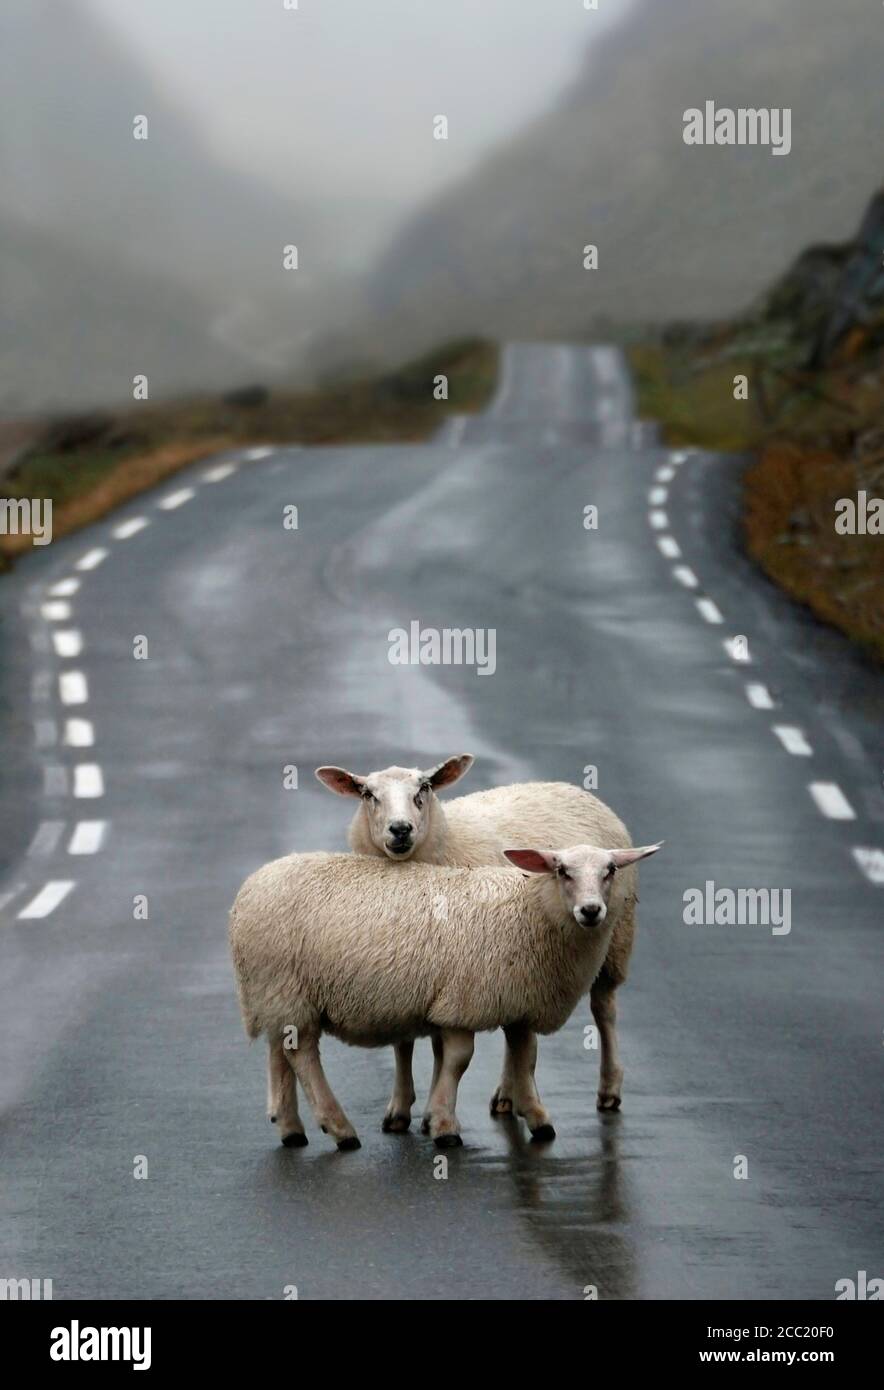 Norwegen, Schaf stehend auf Straße Stockfoto